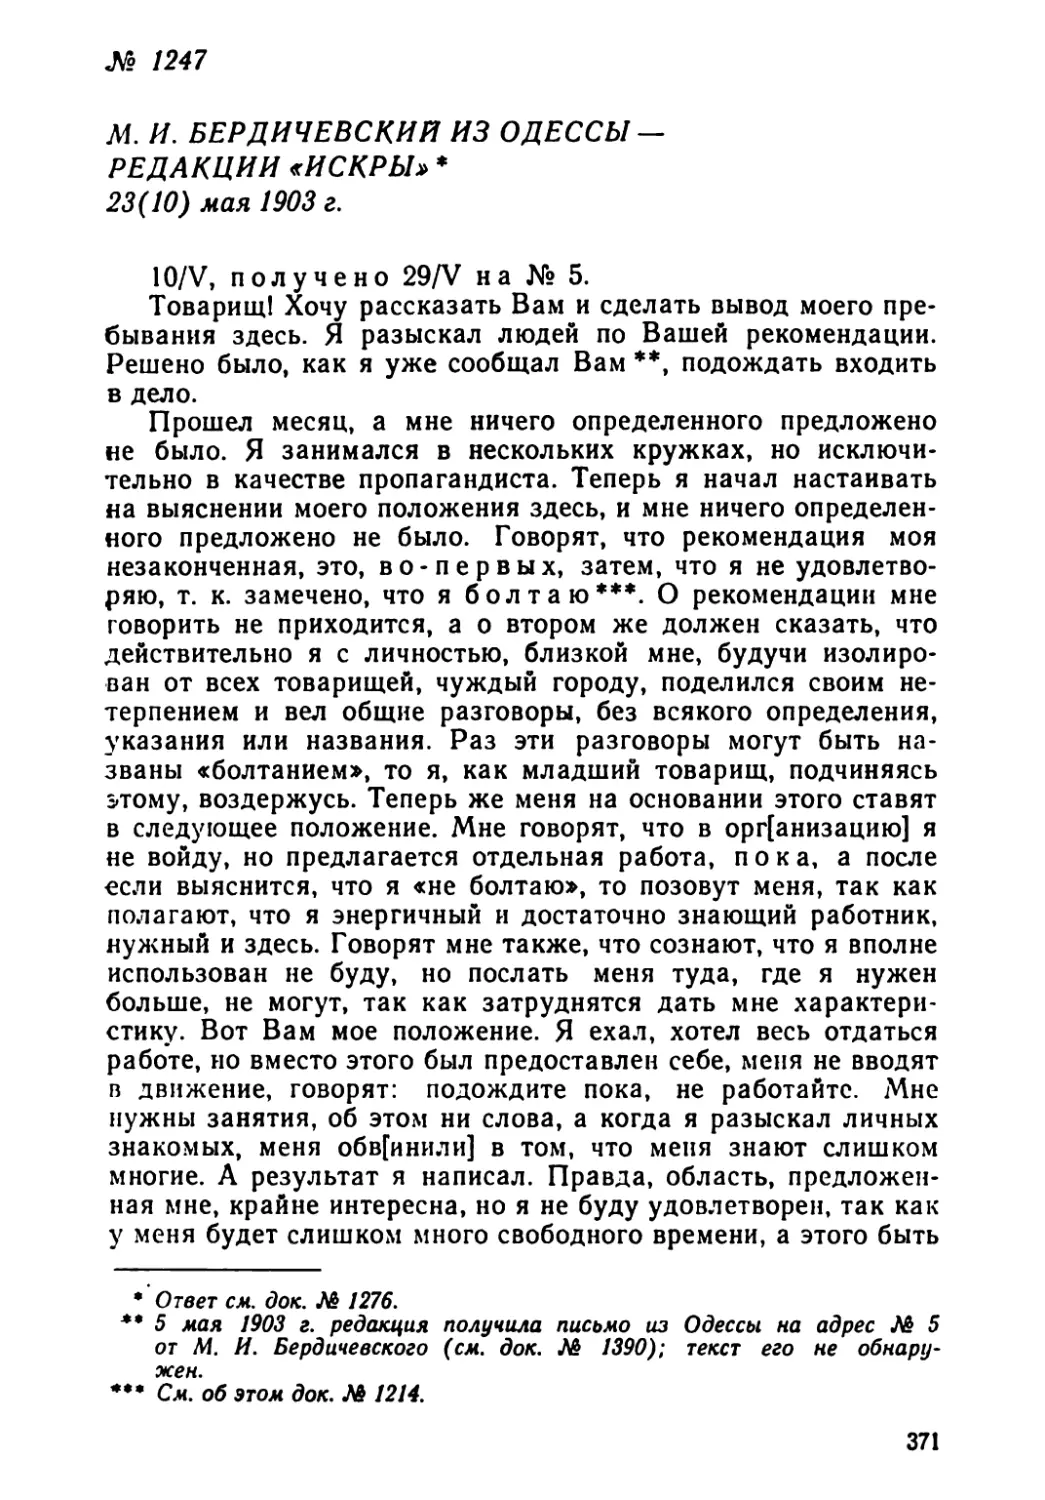 № 1247 М. И. Бердичевский из Одессы — редакции «Искры». 23 мая